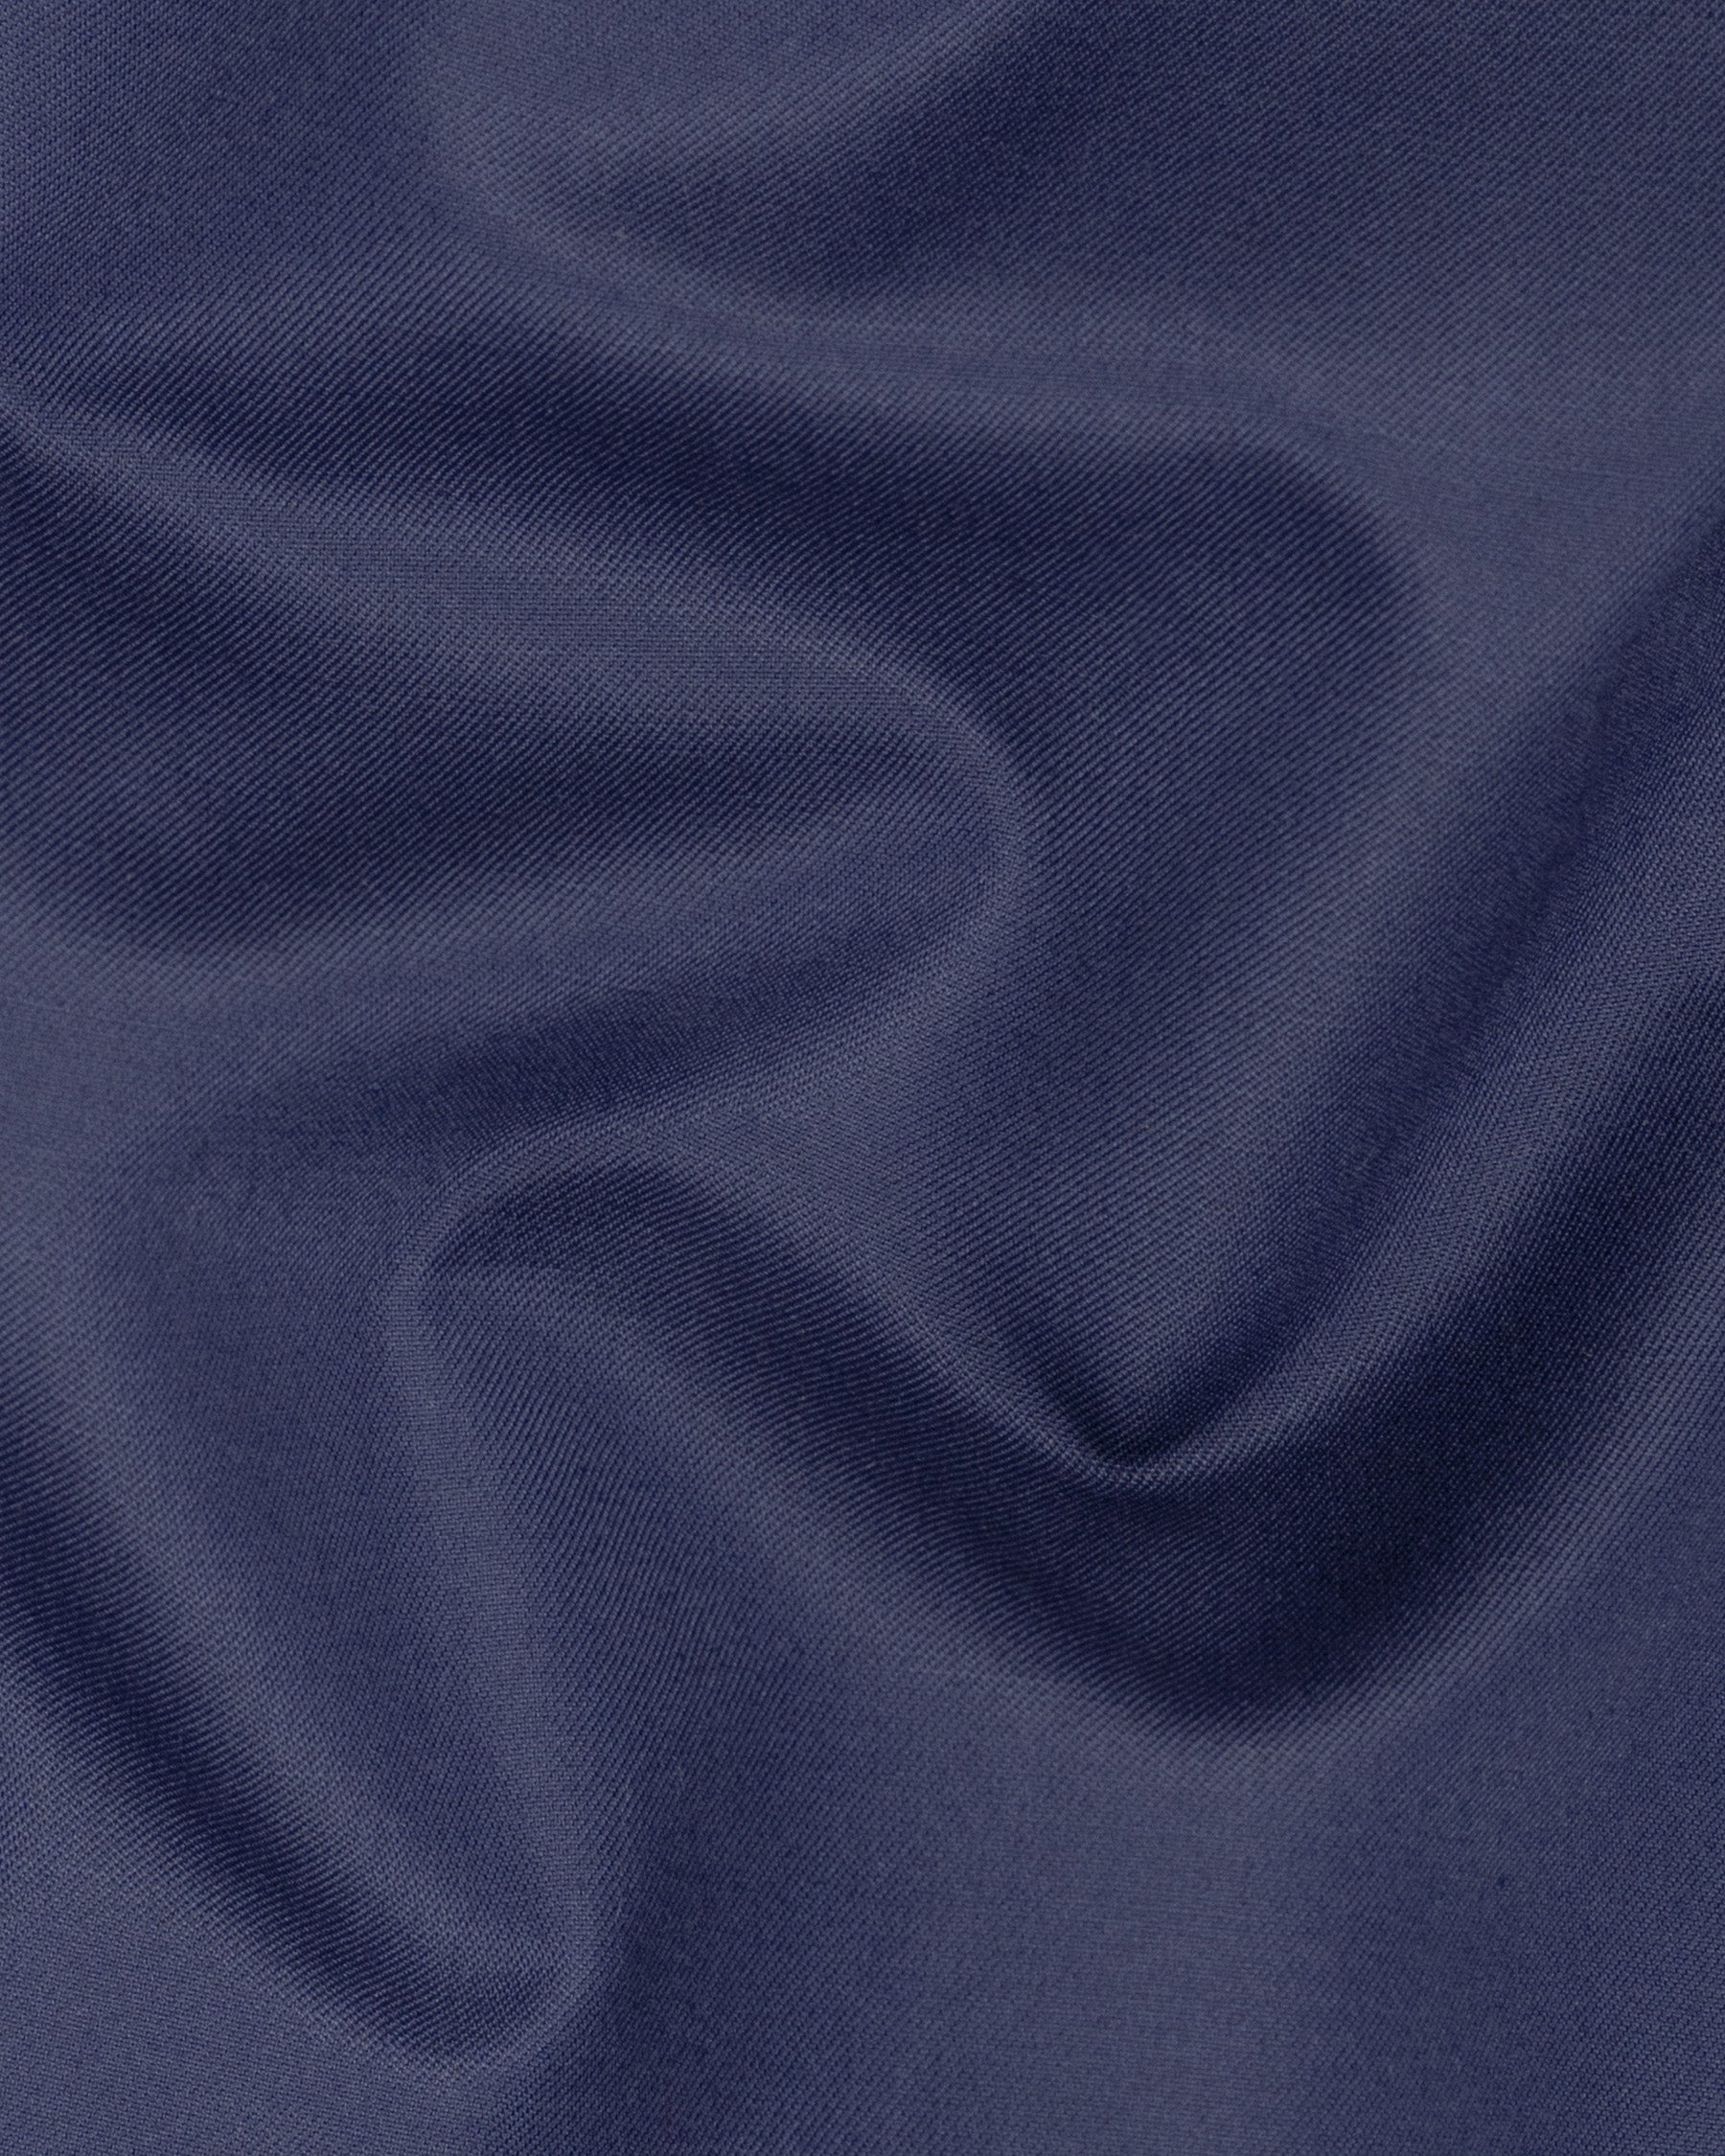 Martinique Blue Wool Rich Pant T1499-28, T1499-30, T1499-32, T1499-34, T1499-36, T1499-38, T1499-40, T1499-42, T1499-44